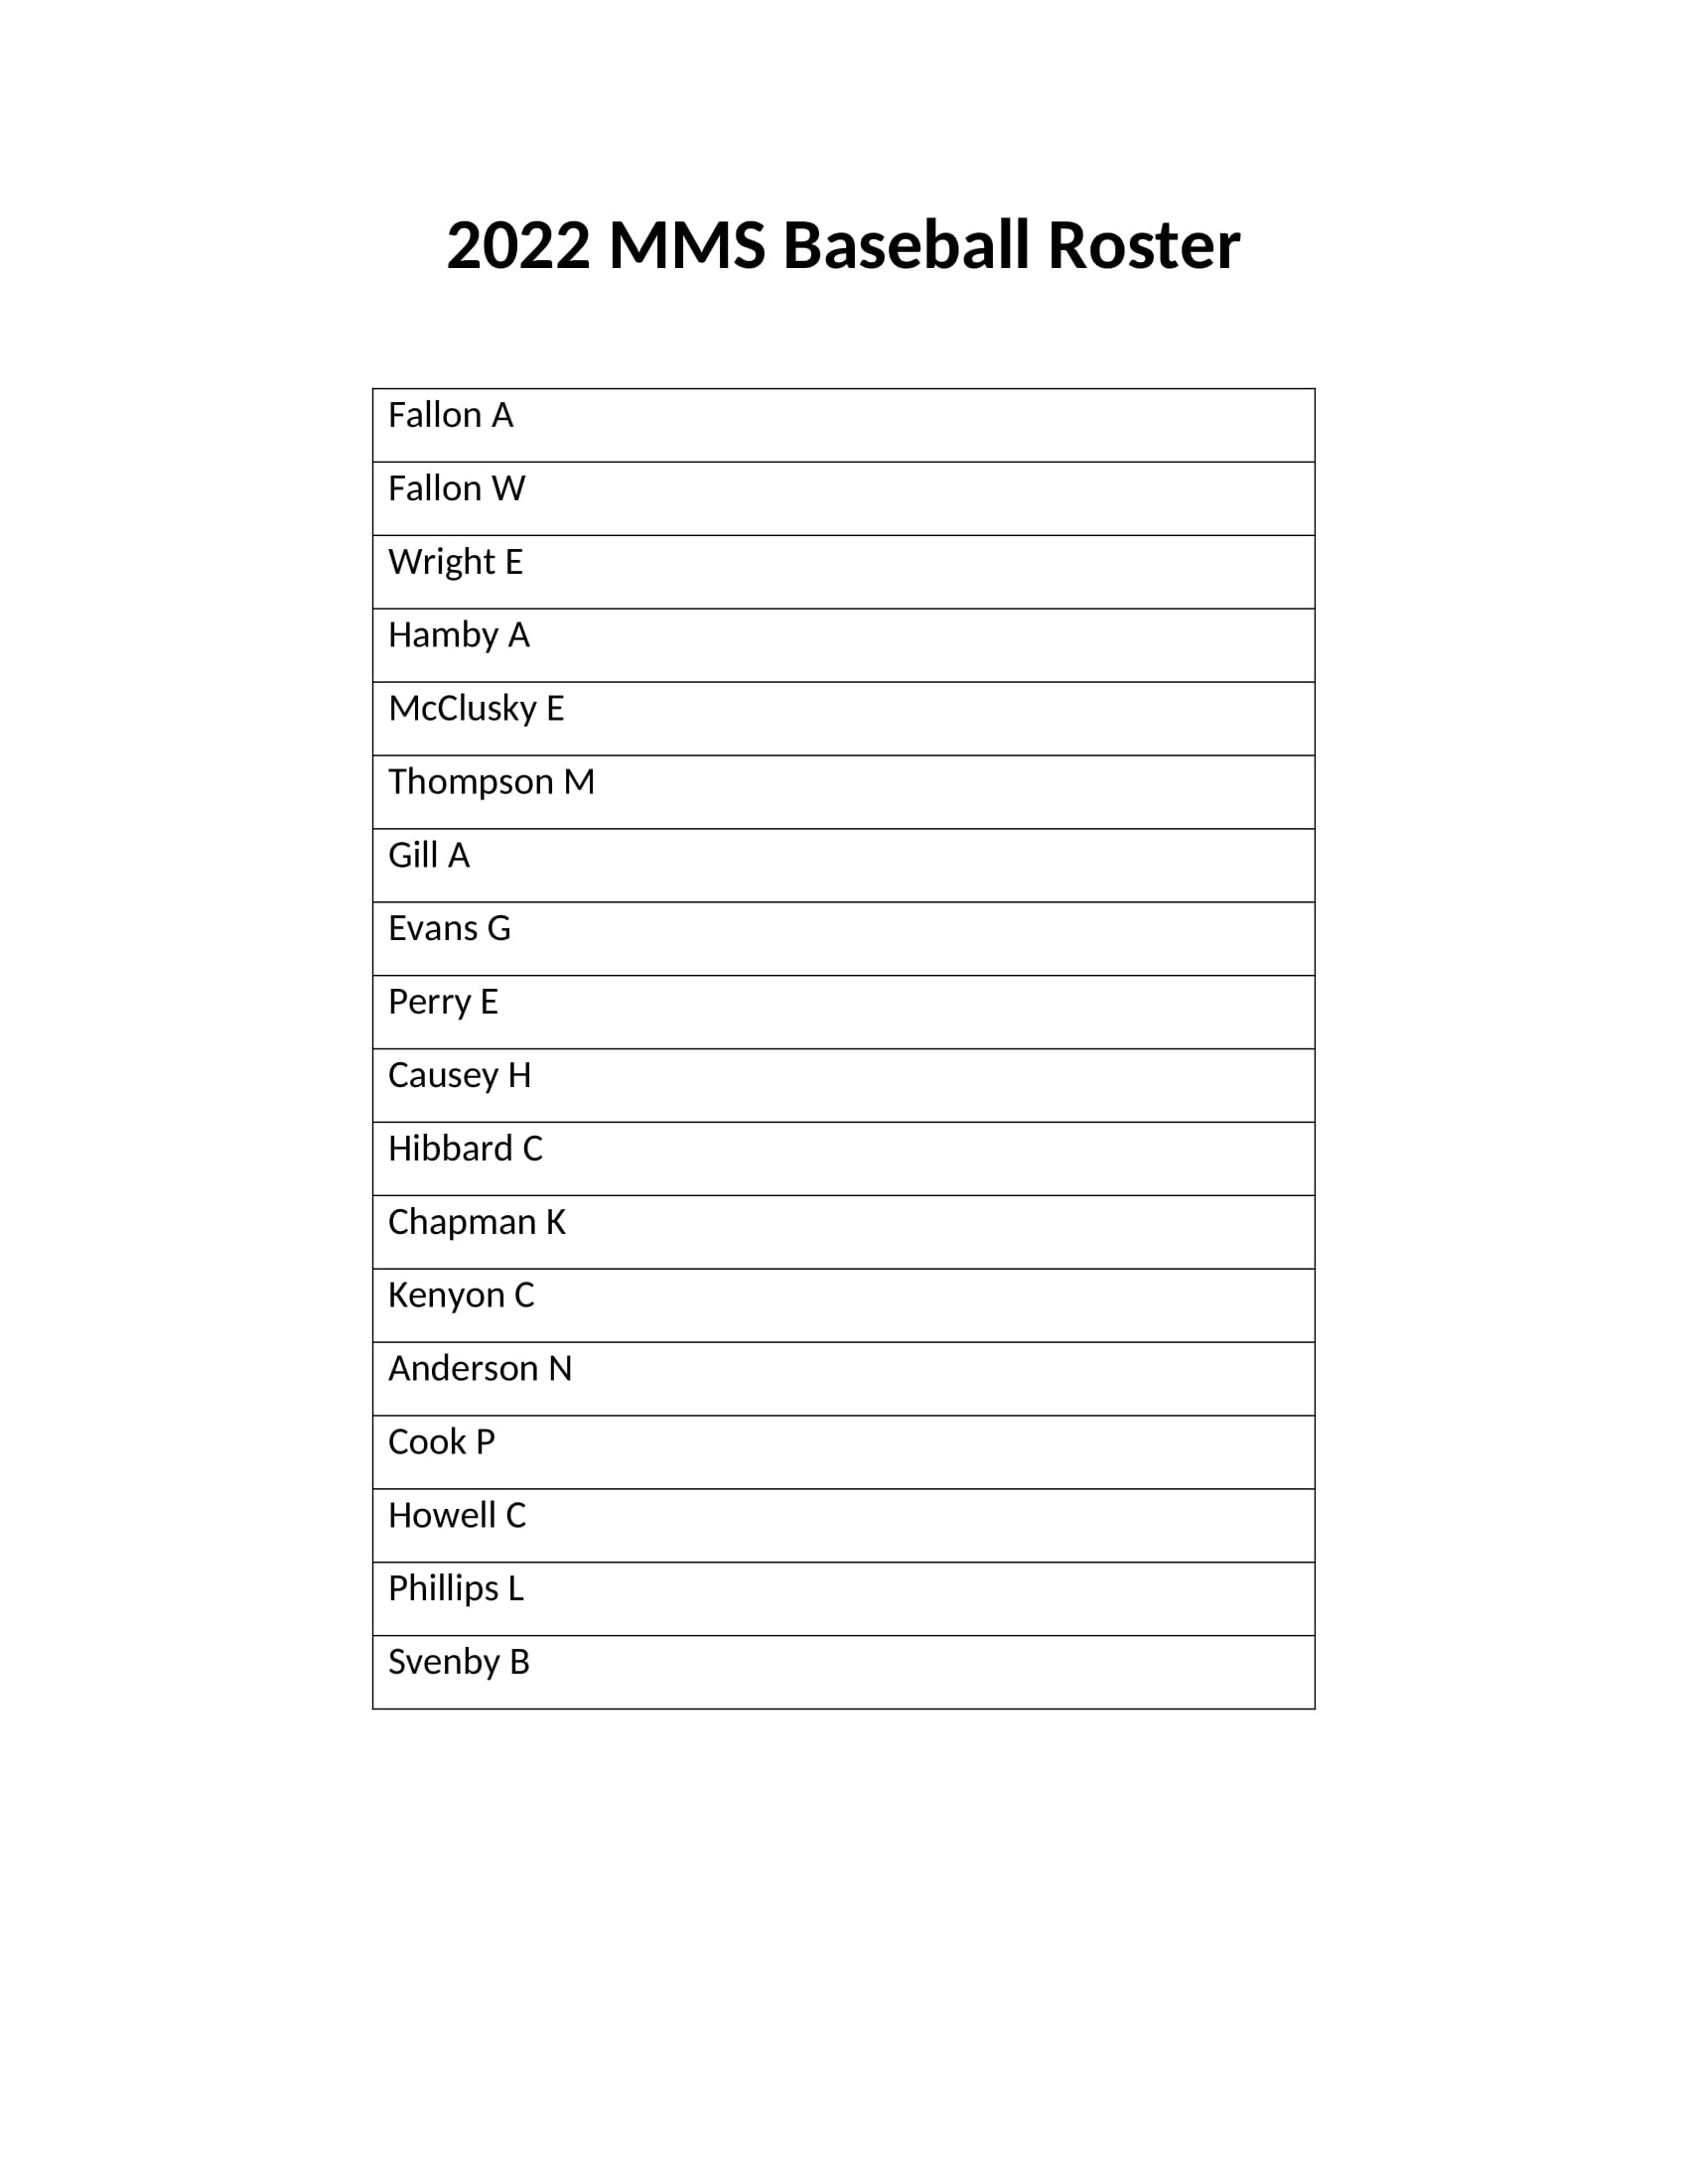 MMS Baseball Roster 2022